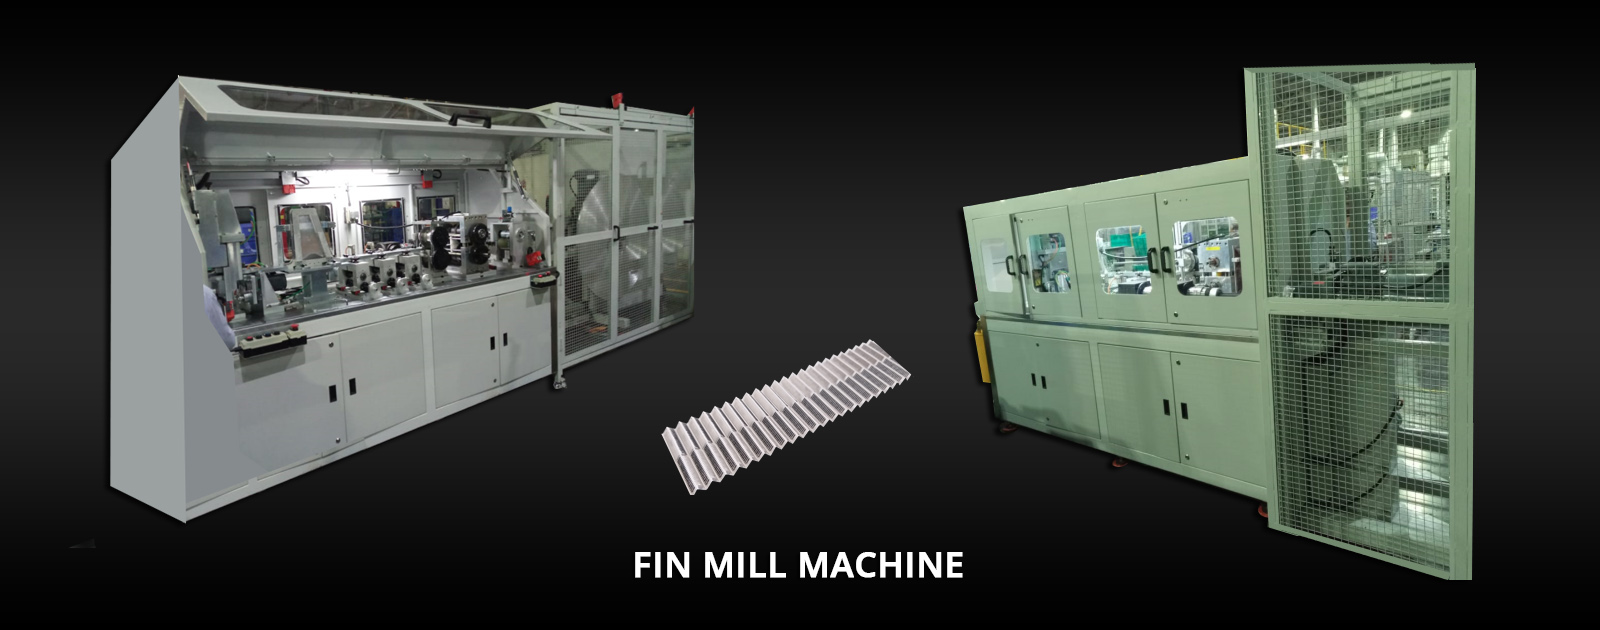 fin mill machine